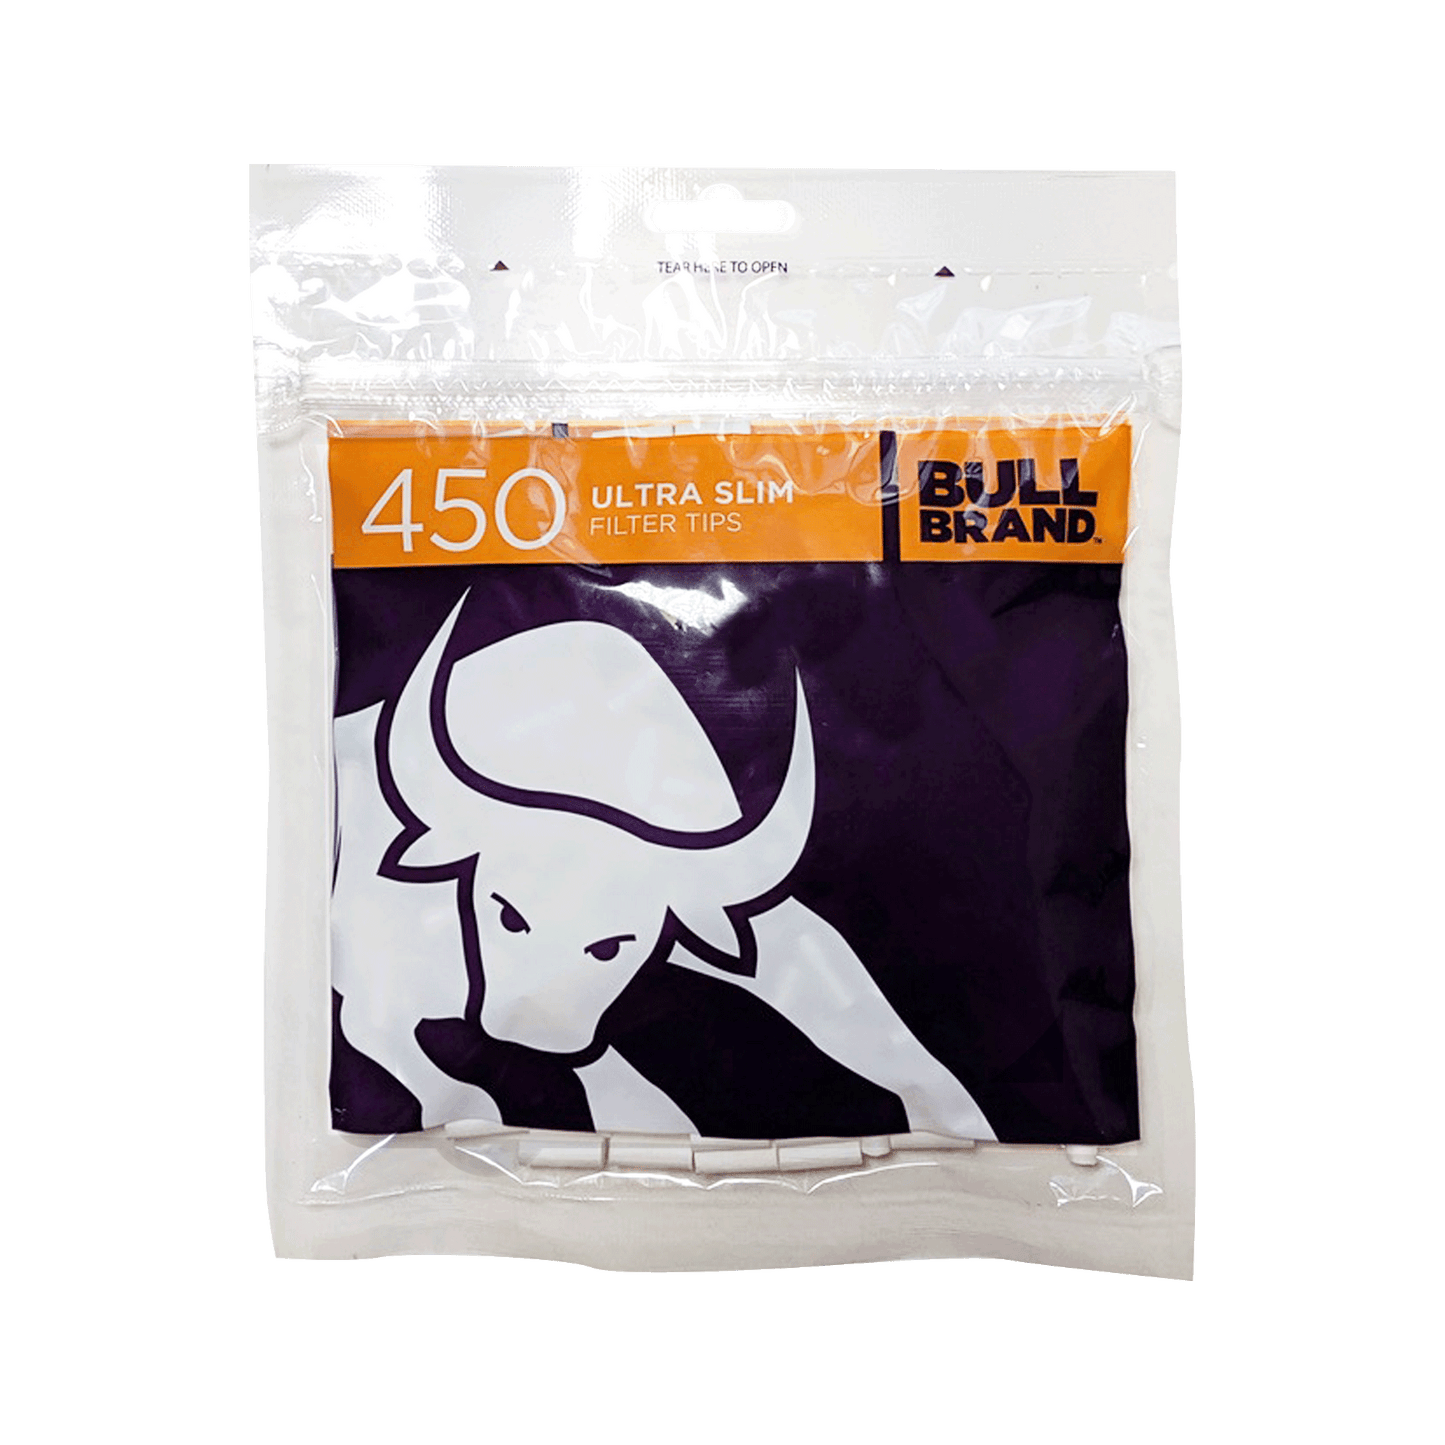 Bull Brand Ultra Filter Tips Bags 450s